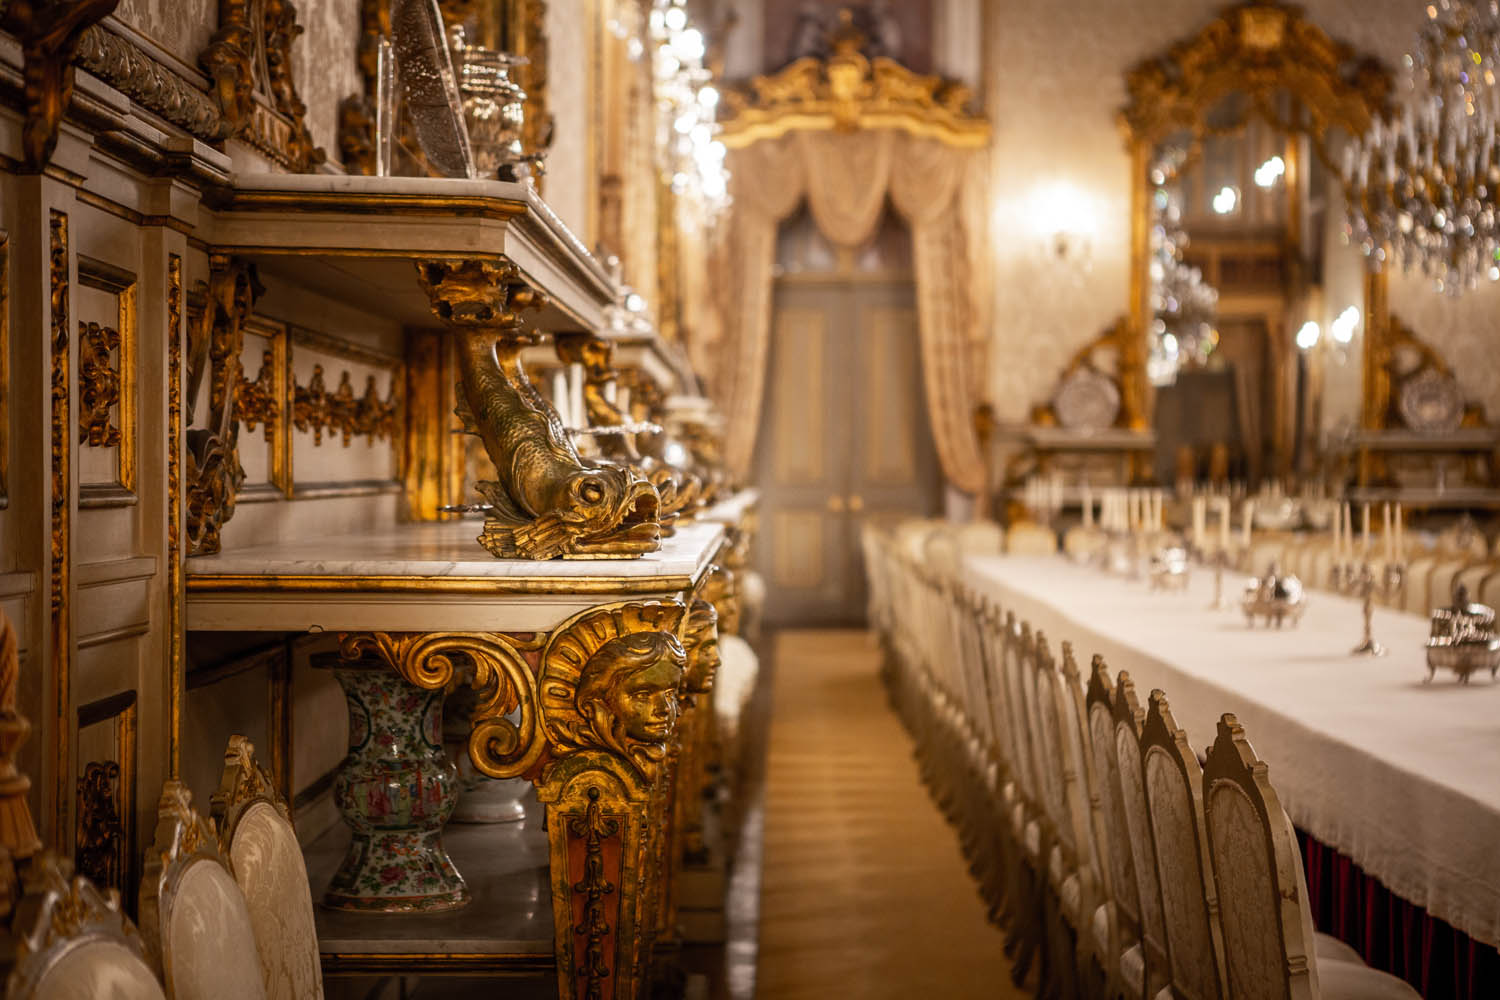 Interieur in een zaal in Palacio Da Ajuda in Lissabon met prachtige details in goud